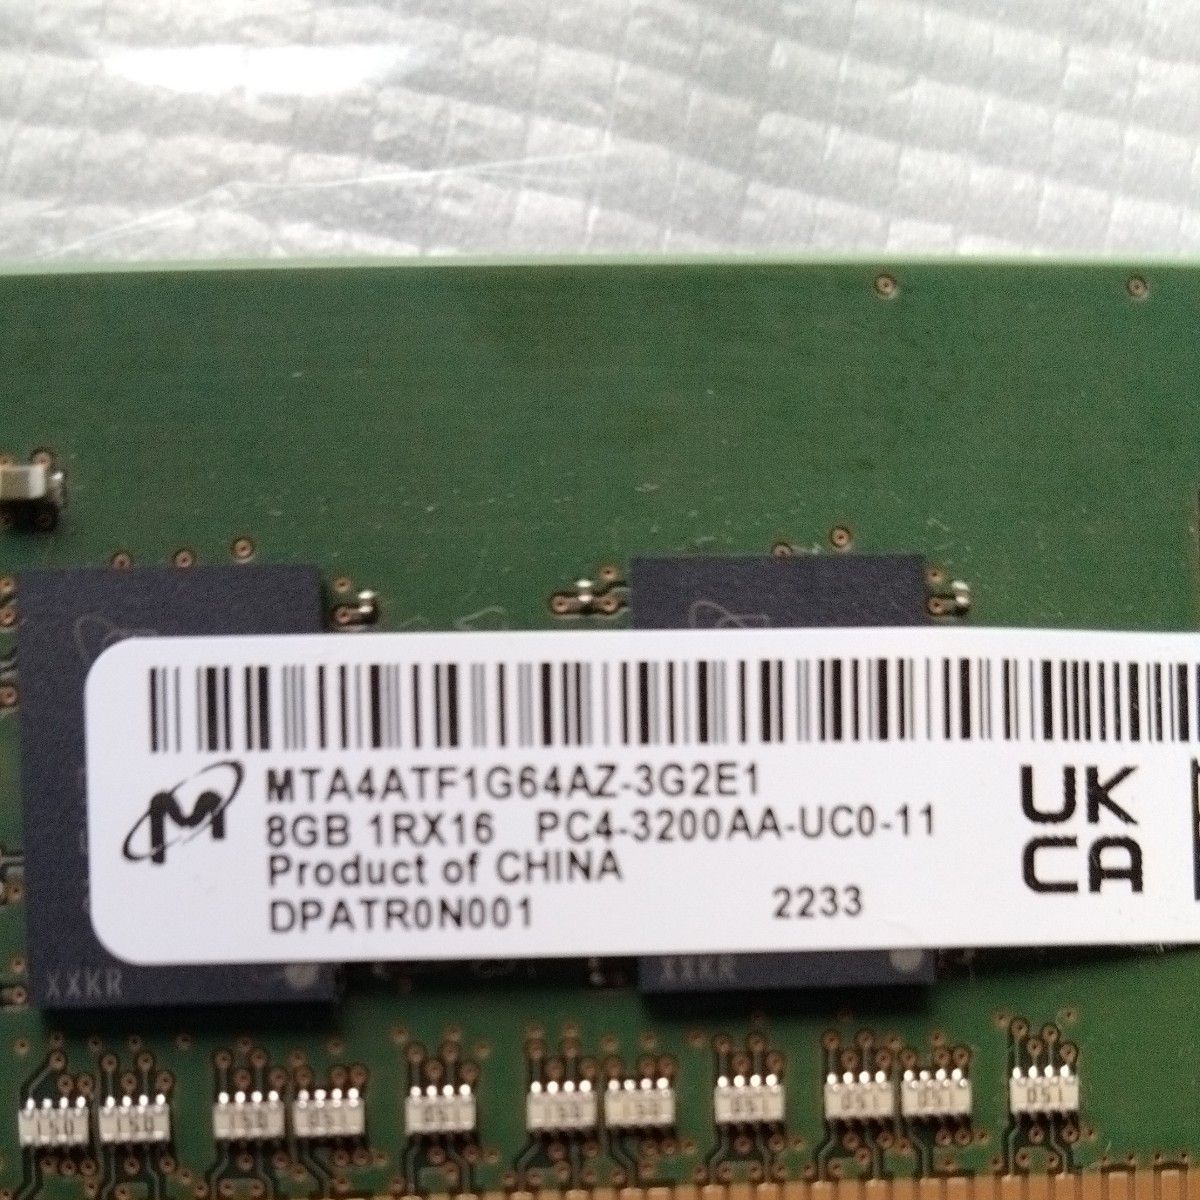 クルーシャル DDR4 8gb 3200mhz デスクトップ用メモリー